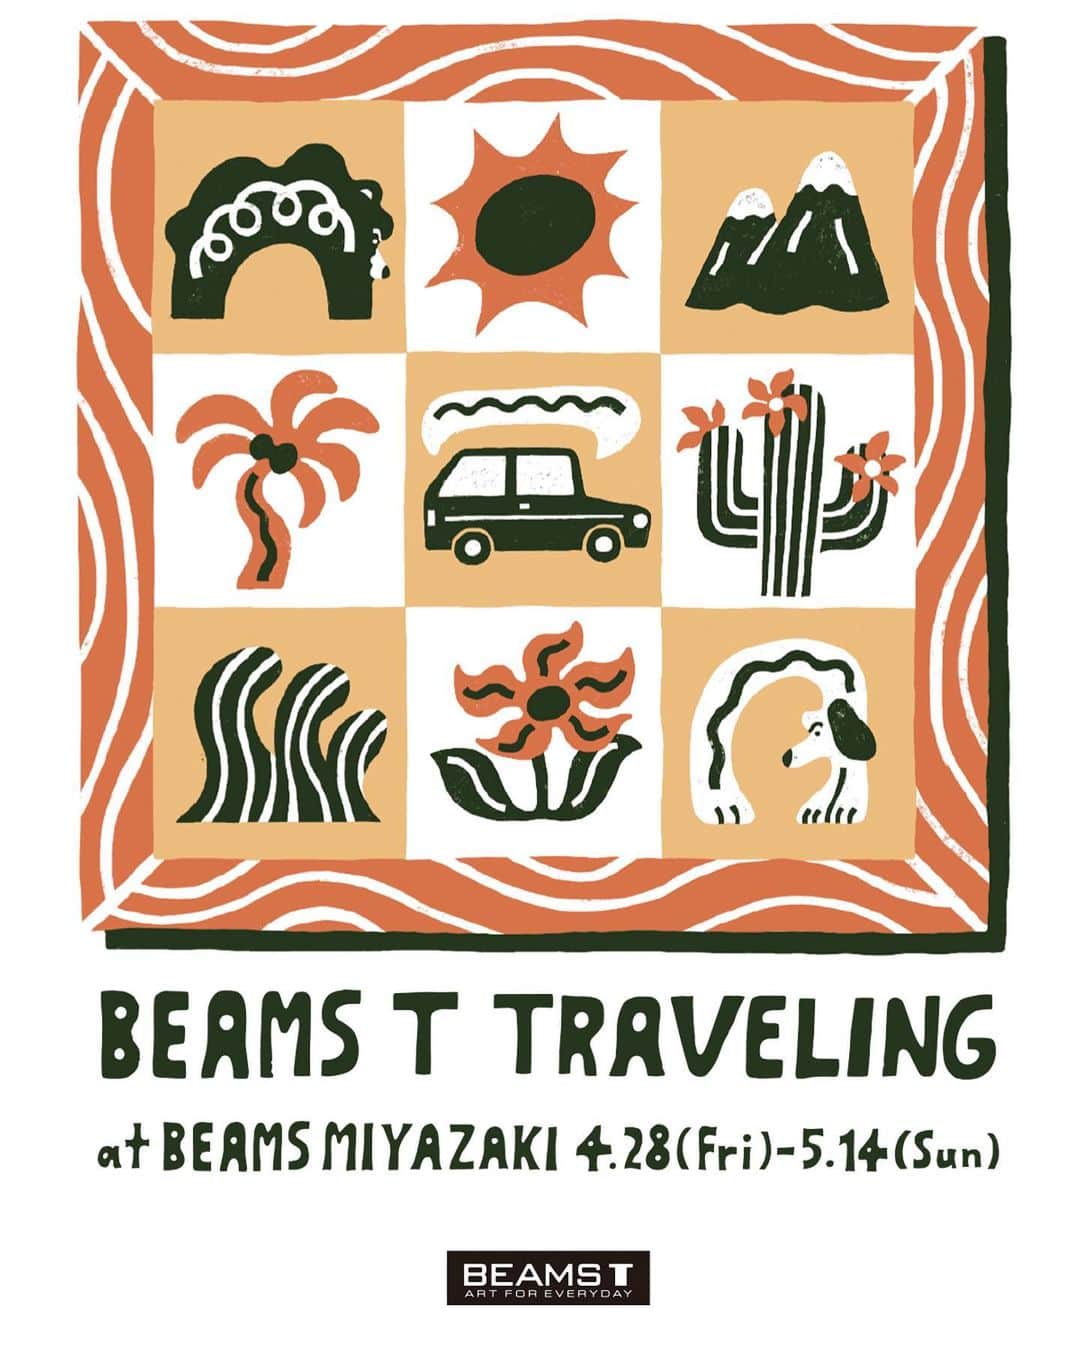 BEAMS Tのインスタグラム：「BEAMS T TRAVELING   〈BEAMS T〉が同レーベルの展開外店舗を巡回し、日本各地に旬なトピックを持ち込む『BEAMS T TRAVELING』を今年も開催します。 今年は第一弾として4月28日（金）より「ビームス 宮崎」で開催。その後、名古屋・京都・長崎を巡回します。開催期間中は普段展開していないアイテムをご覧頂けるのに加え、様々なトピックスアイテムをご用意しております。 『BEAMS T TRAVELING』のイベントビジュアルは、書籍・アパレル・広告などにイラストを提供しペインティングのみならず、セラミックやウッドカットなどさまざまな手法で作品を発表しているイラストレーター、オカタオカ氏が担当。 イベントビジュアルを落とし込んだ限定Tシャツを今回も製作し、「BEAMS公式オンラインショップ」およびイベント開催店舗にて限定販売いたします。 〈BEAMS T〉ならではのキュレーションを是非お楽しみください。  開催店舗・日時 ビームス 宮崎：4月28日（金）～5月14日（日） ビームス 名古屋：6月2日（金）～6月18日（日） ビームス 京都：7月7日（金）～7月23日（日） ビームス 長崎：8月10日（木）～8月27日（日）  @beams_official @beams_t @okataoka @beams_miyazaki @beams_nagoya @beams_kyoto @beams_nagasaki #beams #beamst #beamsttraveling #オカタオカ」